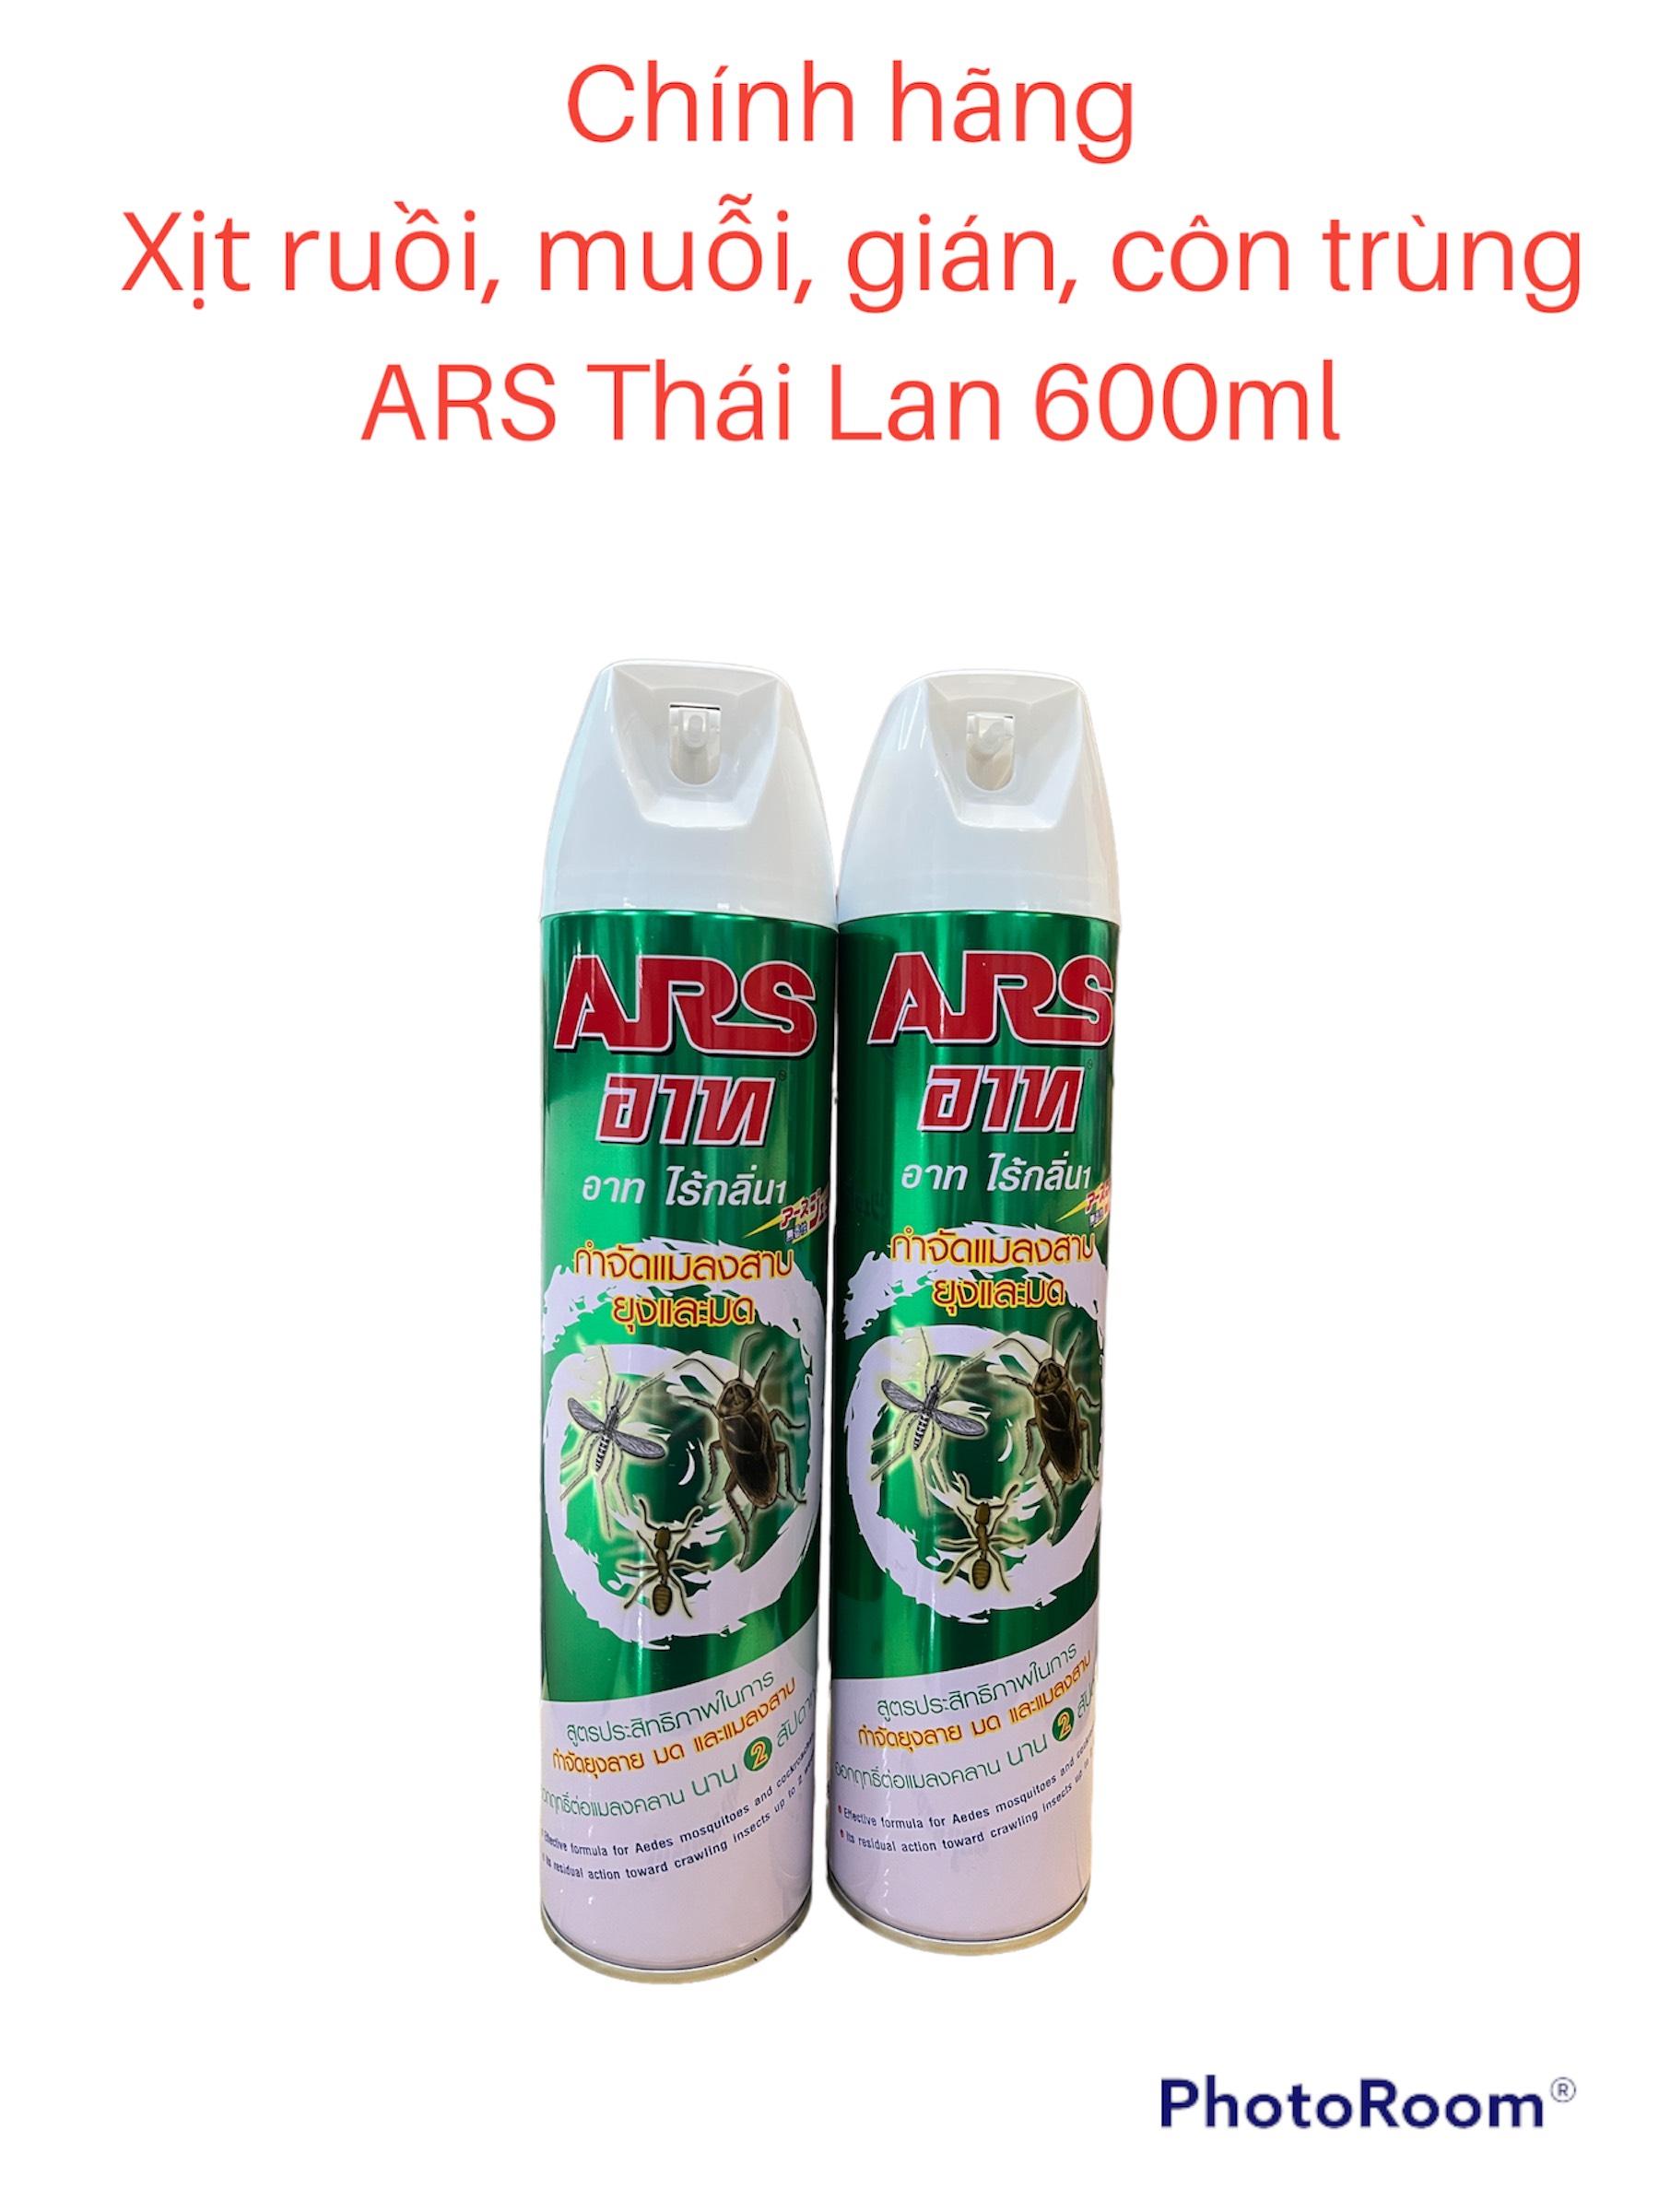 Chính hãng - Chai Xịt Côn Trùng ARS Thái Lan 600ml Gián, ruồi, muỗi -